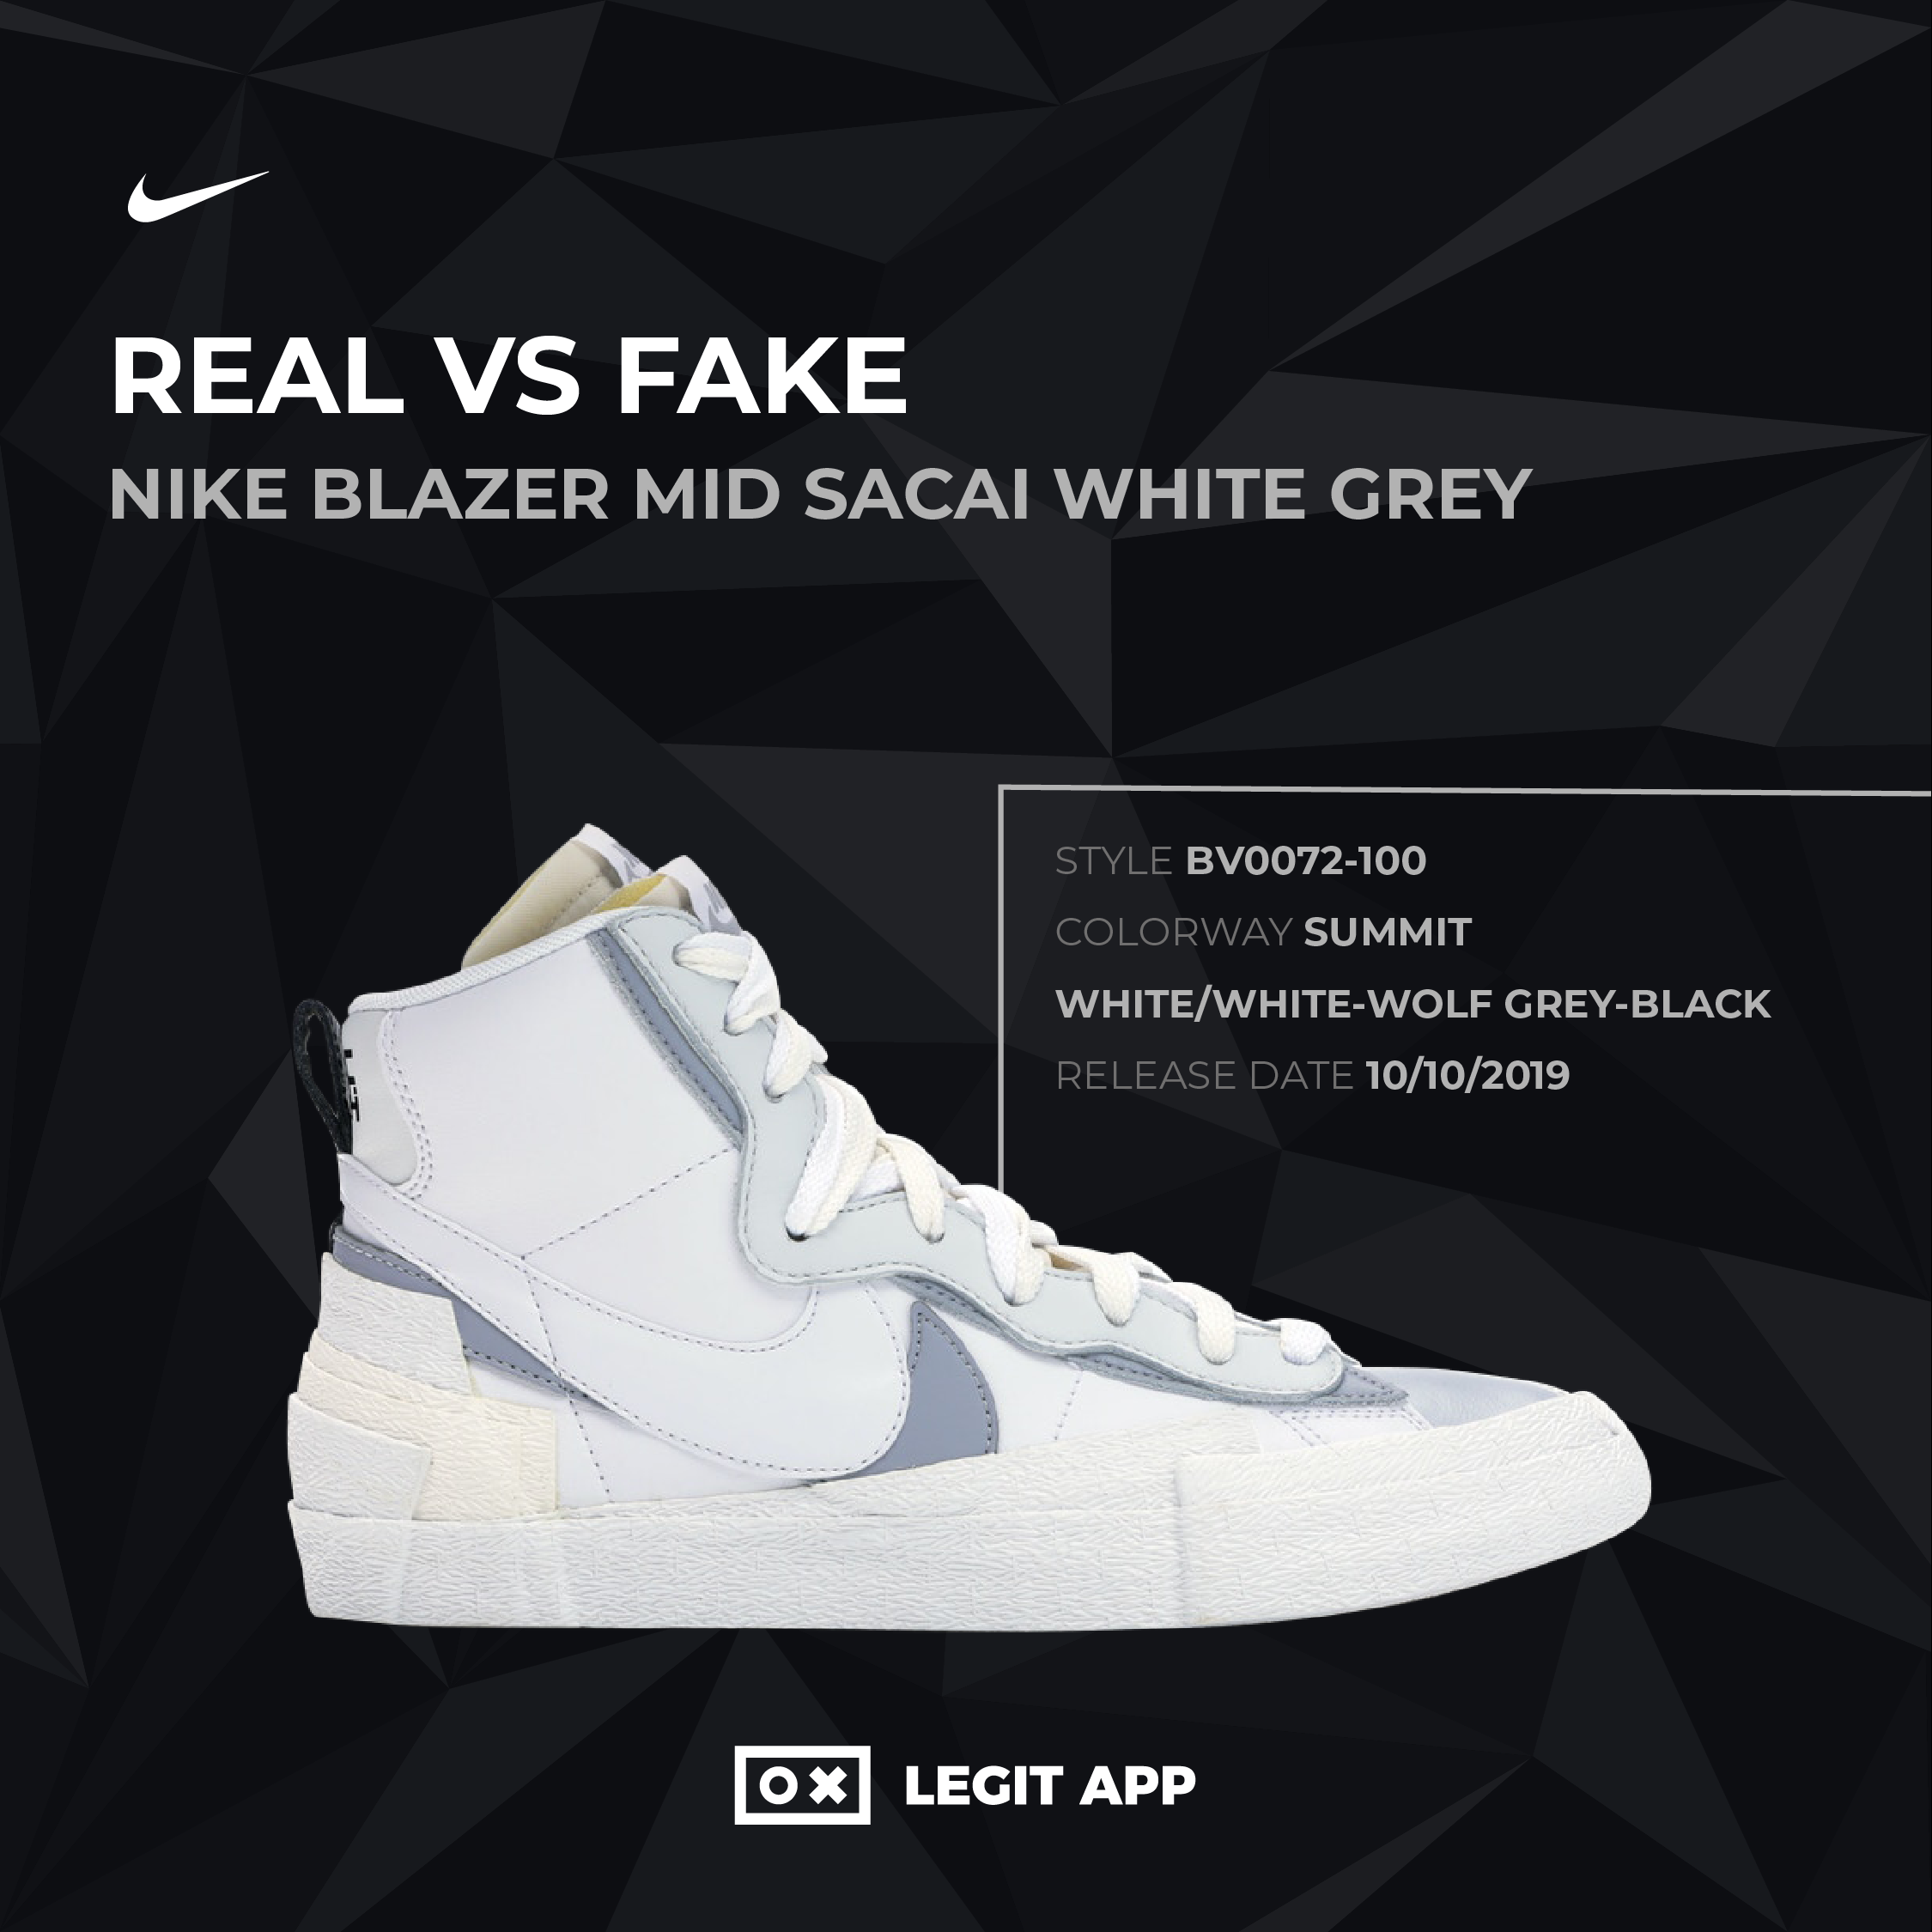 REAL - Nike Blazer Mid sacai Grey LEGIT APP